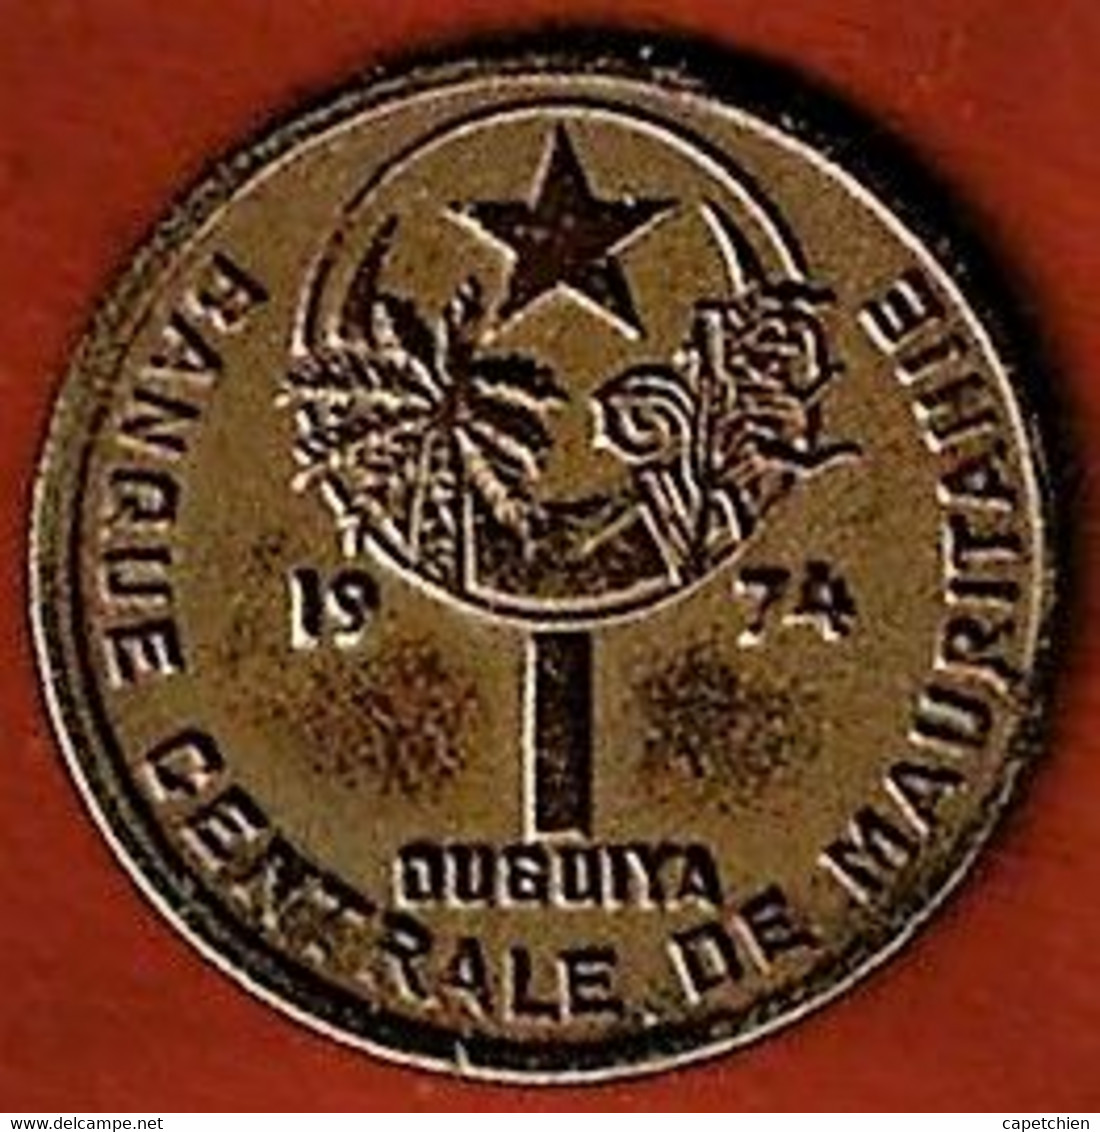 MAURITANIE / 1 OUGUIYA / 1974 - Mauritanie